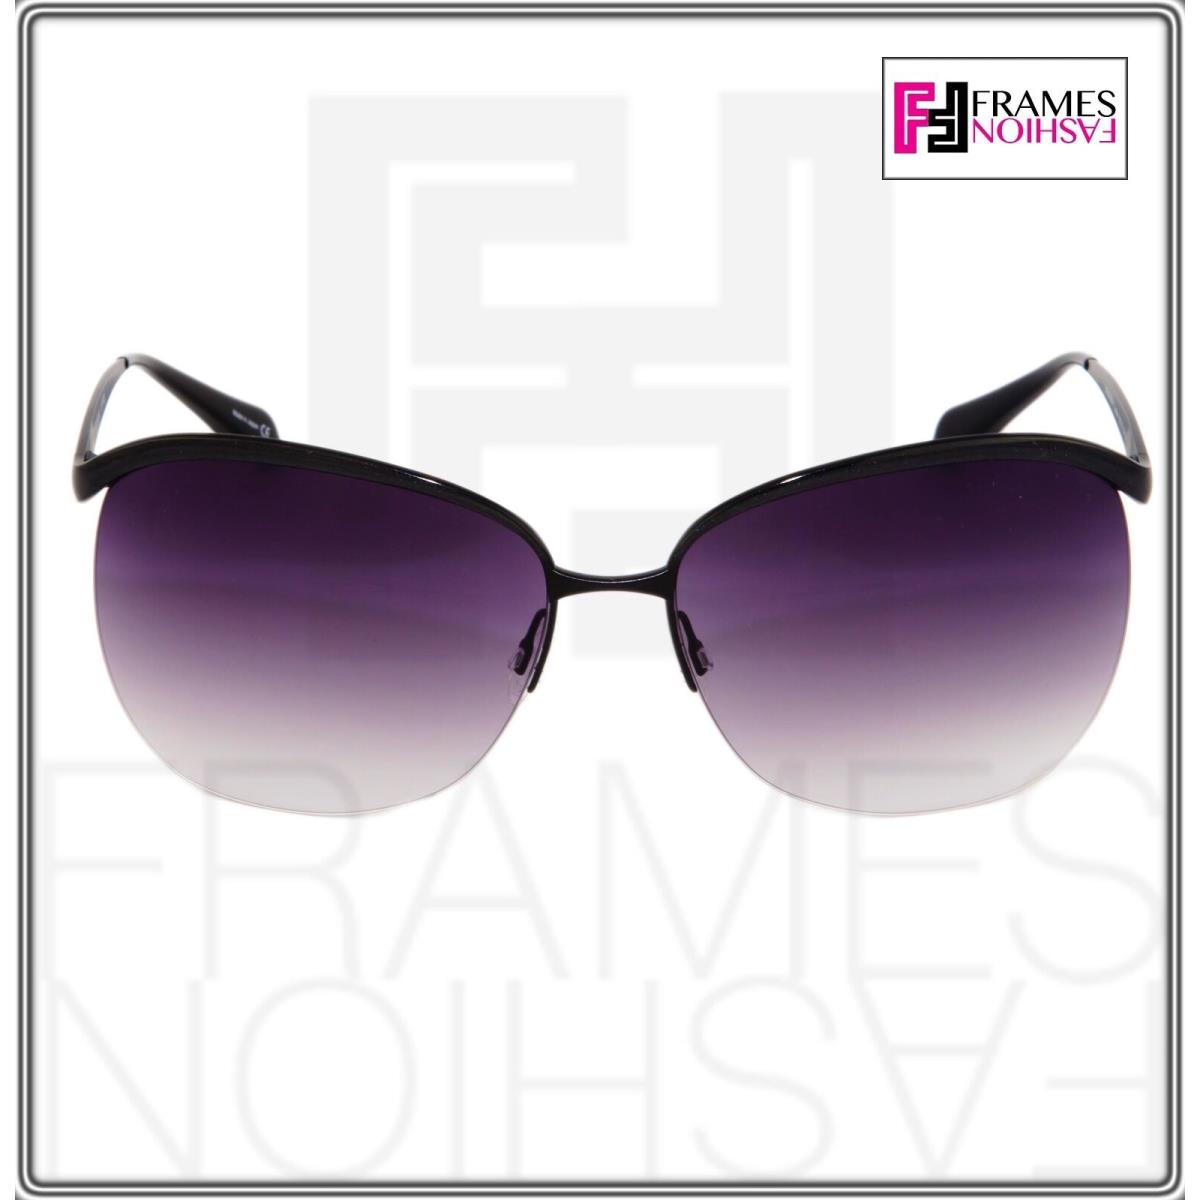 Oliver Peoples sunglasses  - Black Frame, Purple Lens 6